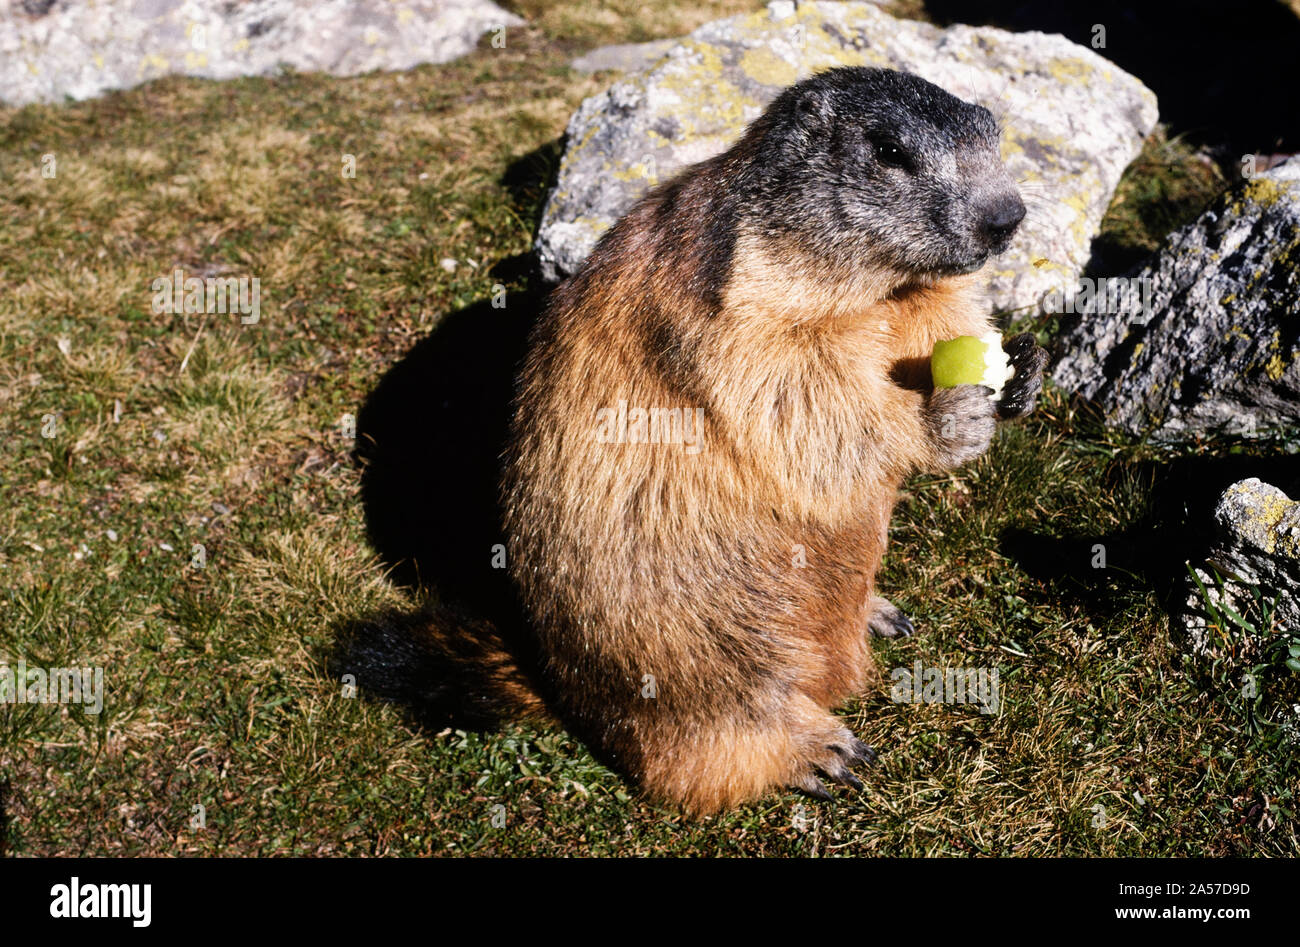 Presque une marmotte alpine tame (Marmota marmota) manger un morceau d'apple Banque D'Images